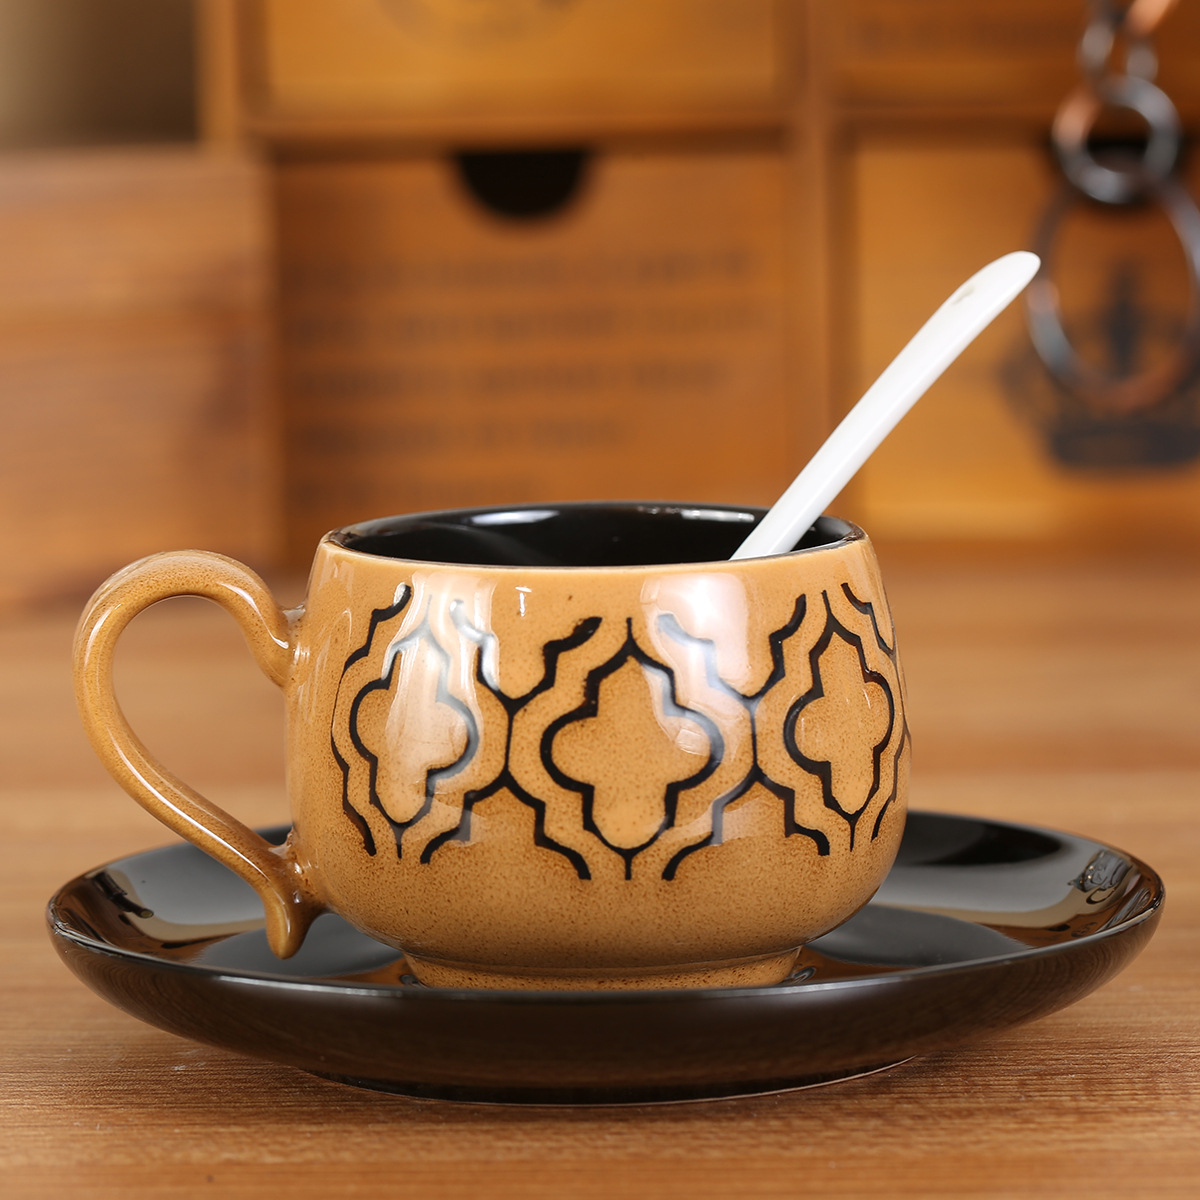 新品陶瓷杯欧式电镀咖啡杯碟套装外贸马克杯会销创意礼品印制LOGO-阿里巴巴